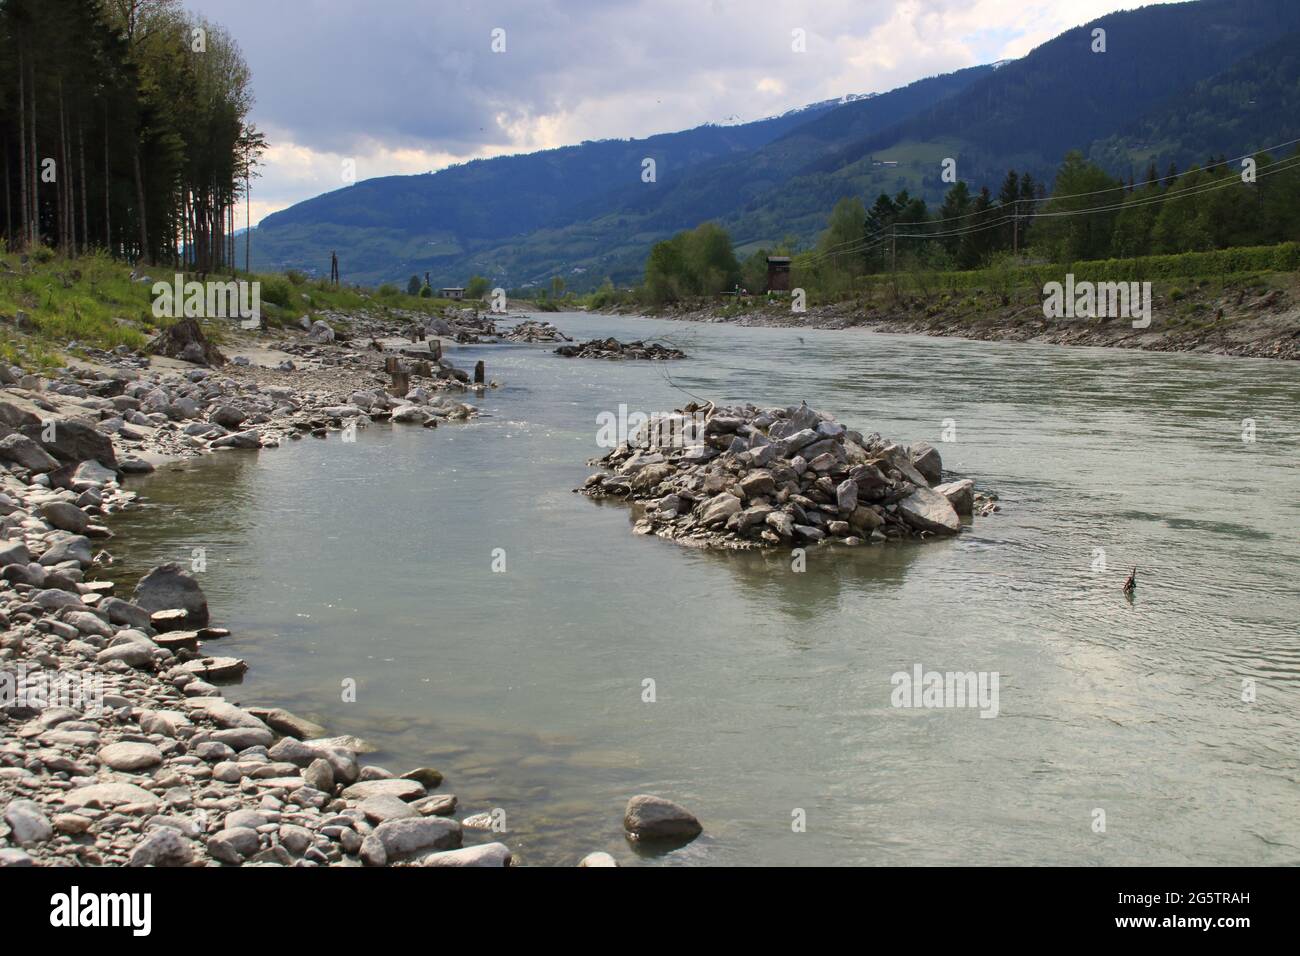 River Salzach between Kaprun and Zell am See Stock Photo